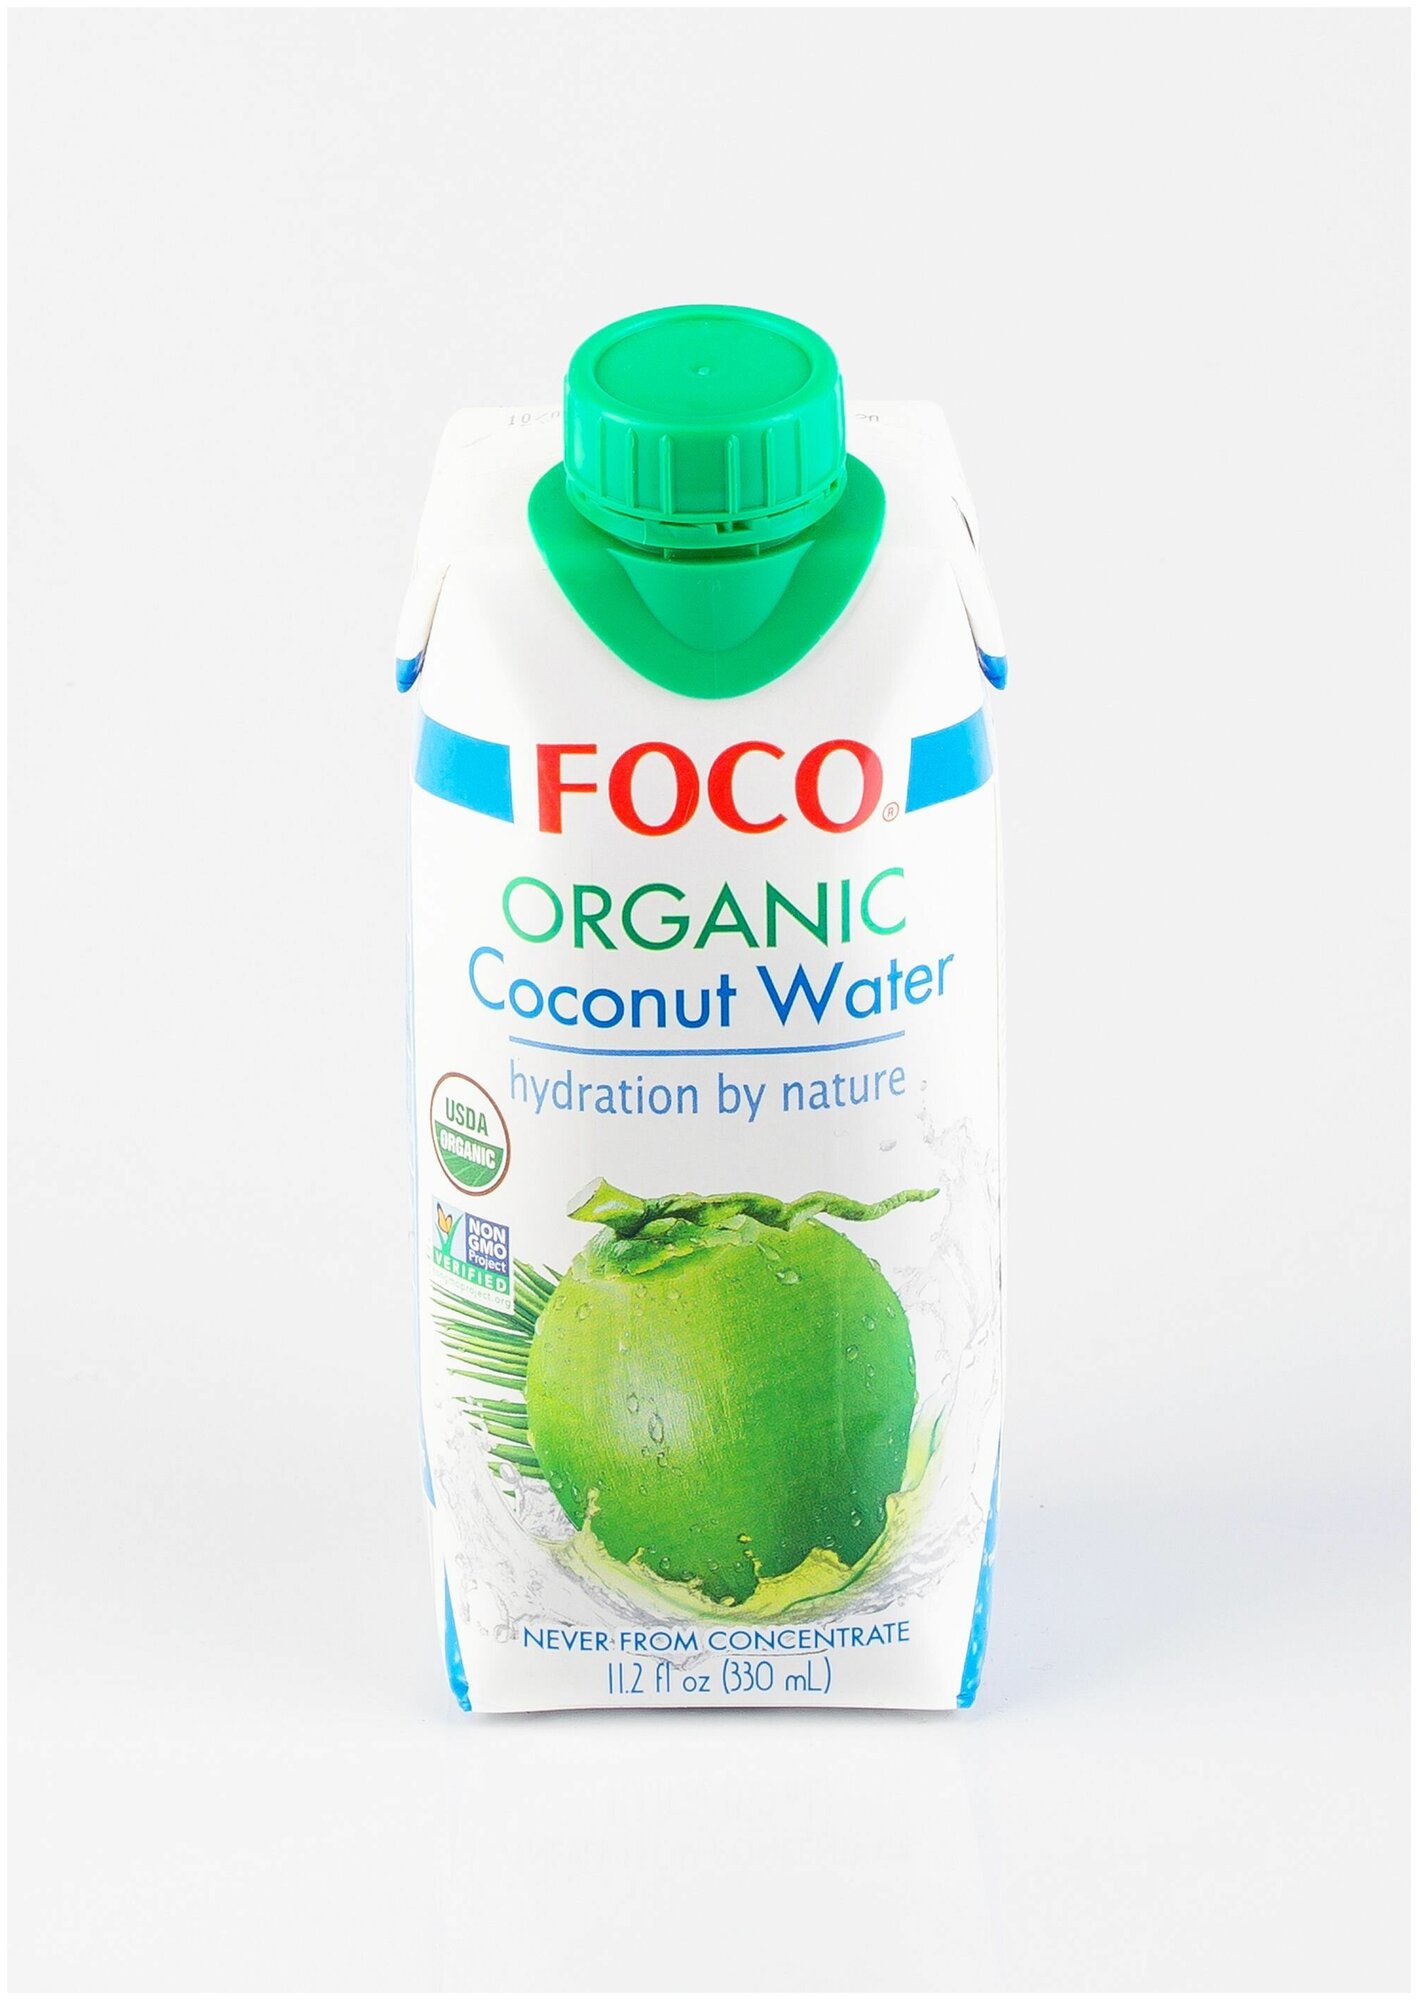 ORGANIC кокосовая вода "FOCO" 330 мл Tetra Pak - фотография № 6